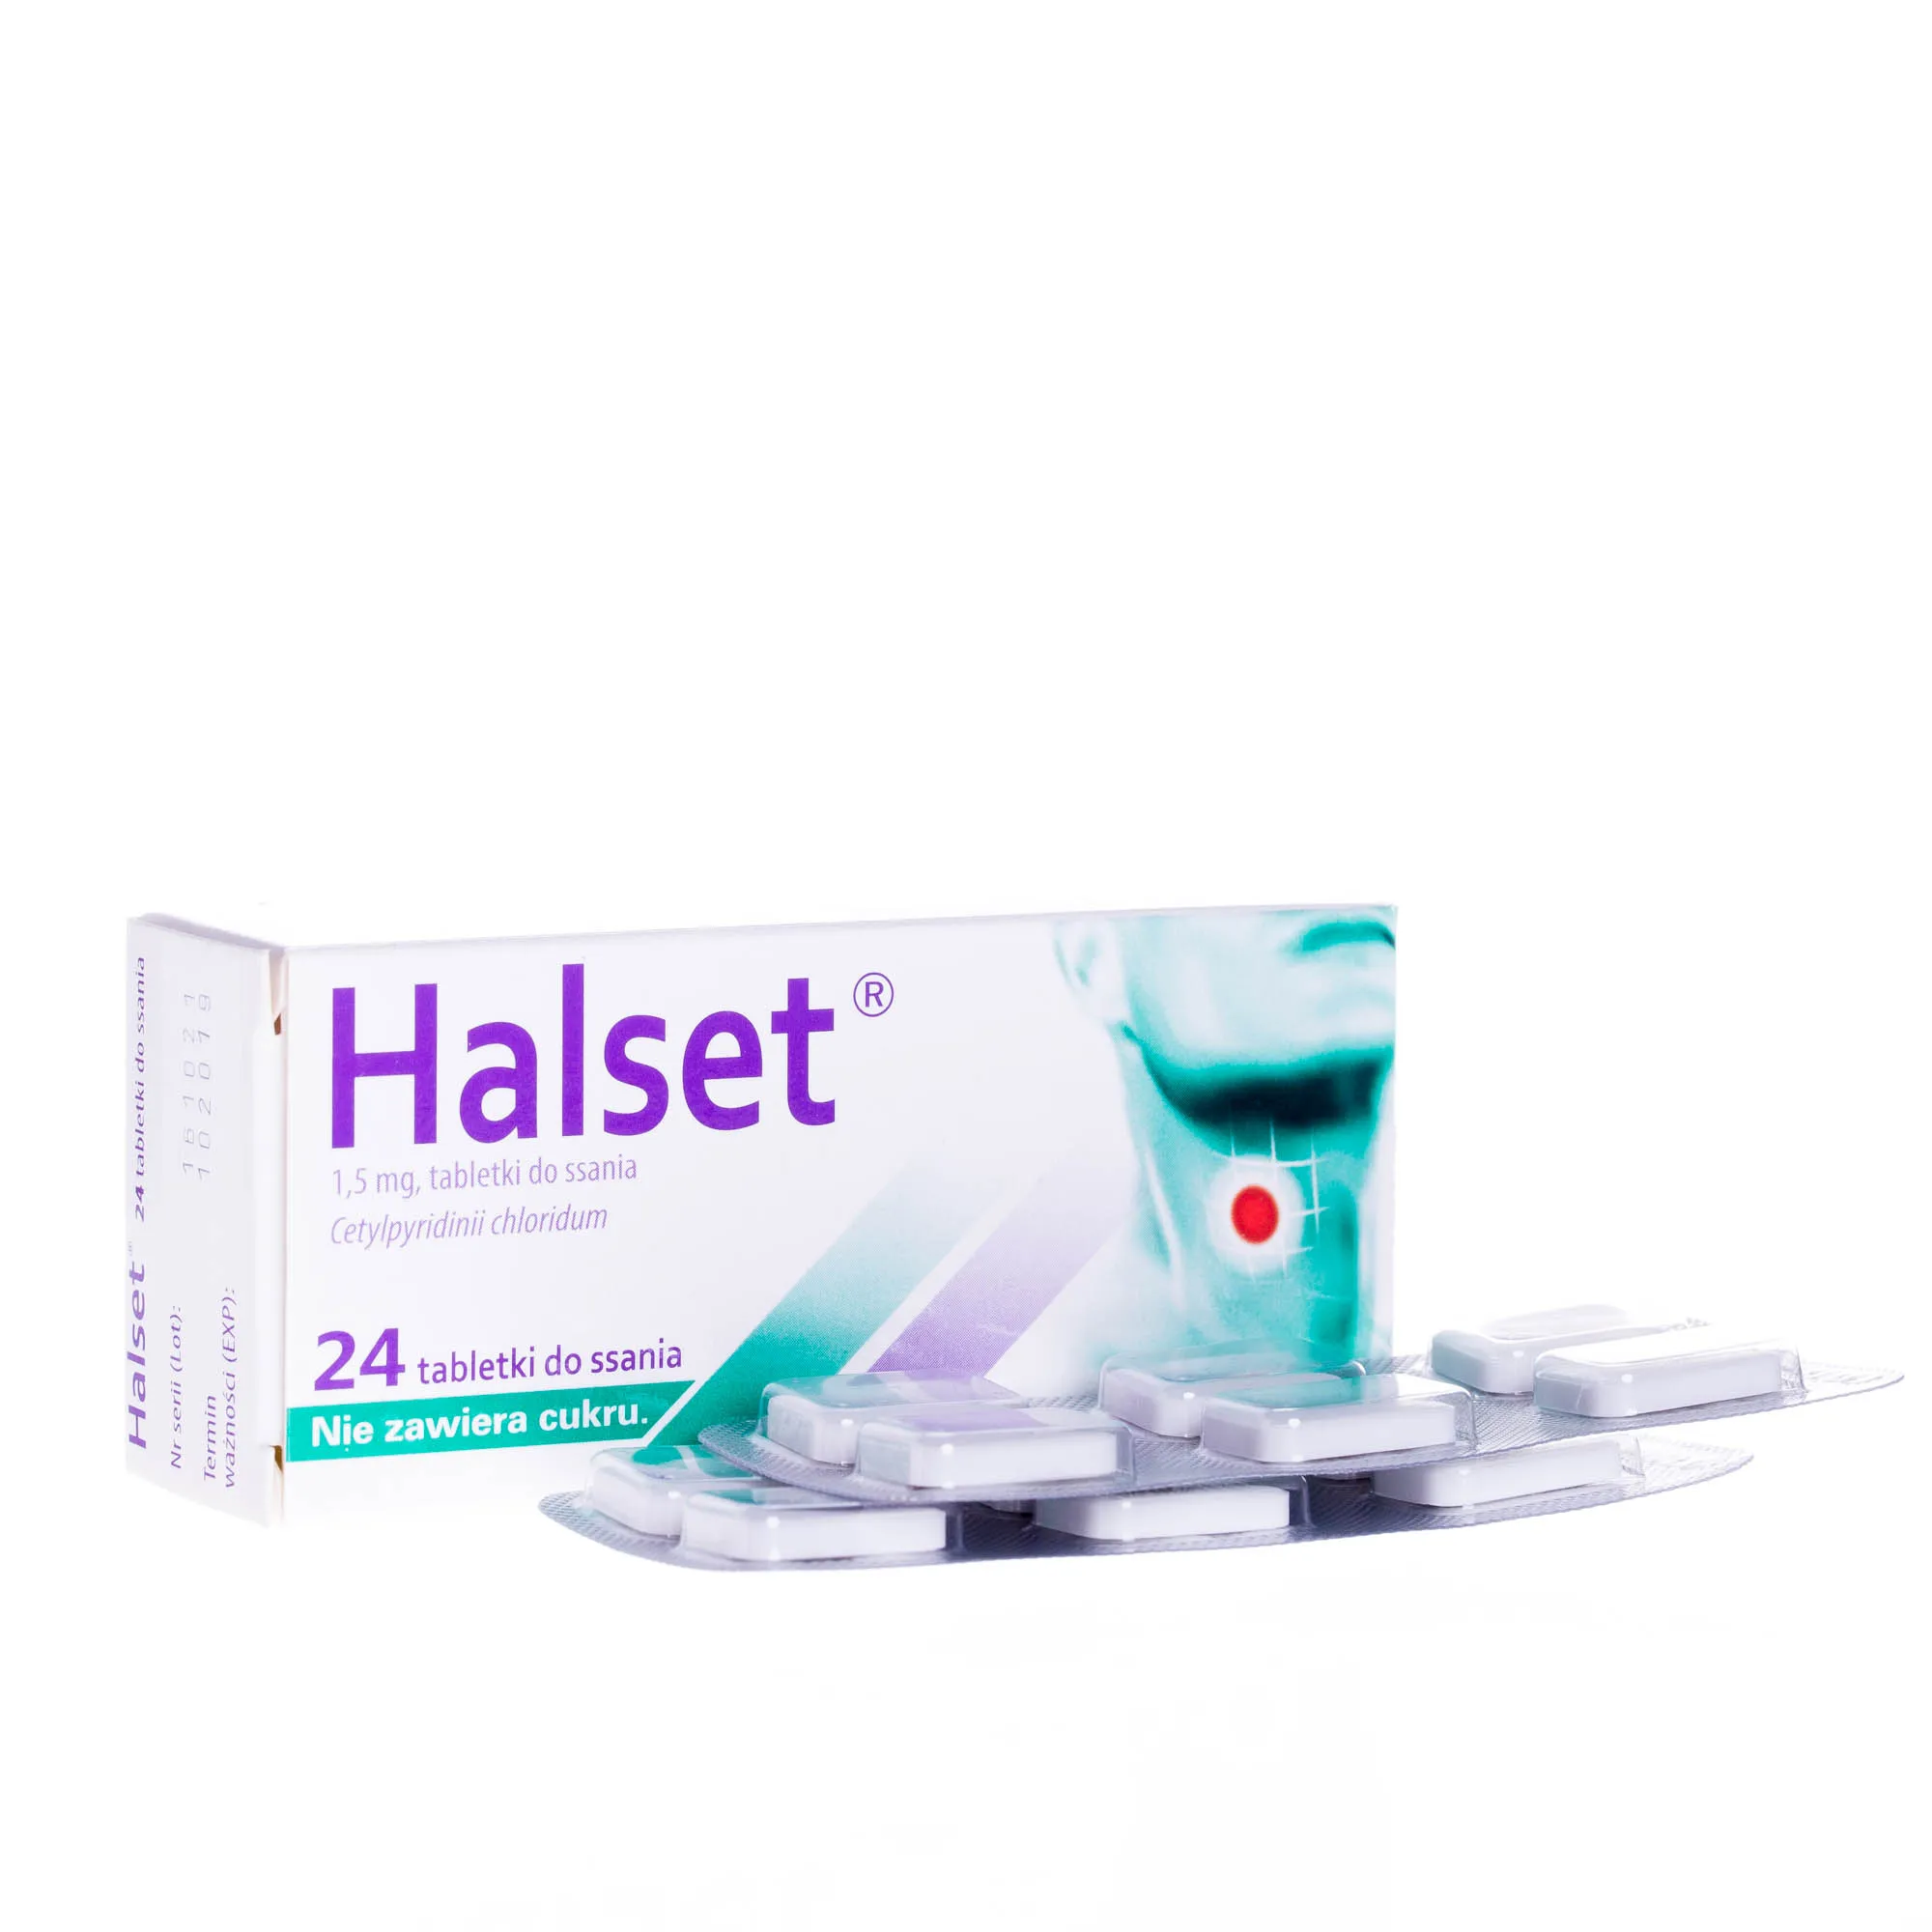 Halset, 1,5 mg, 24 tabletki do ssania 